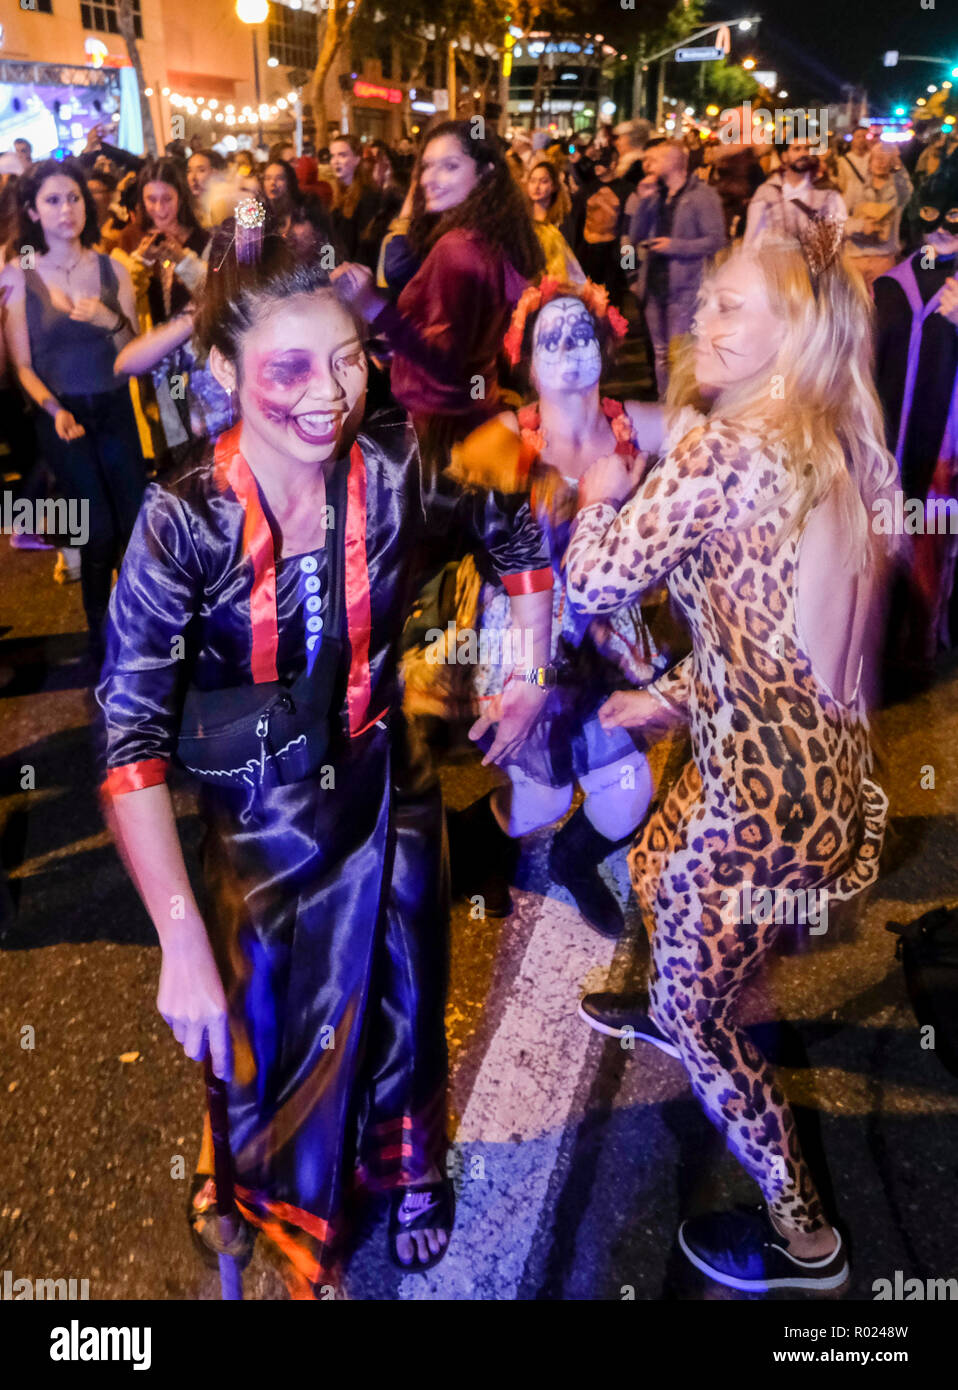 Los Angeles, California, EEUU. El 31 de octubre, 2018. Halloween  juerguistas en traje asistir al carnaval de disfraces de Halloween en West  Hollywood en Los Angeles, Estados Unidos, el 31 de octubre,